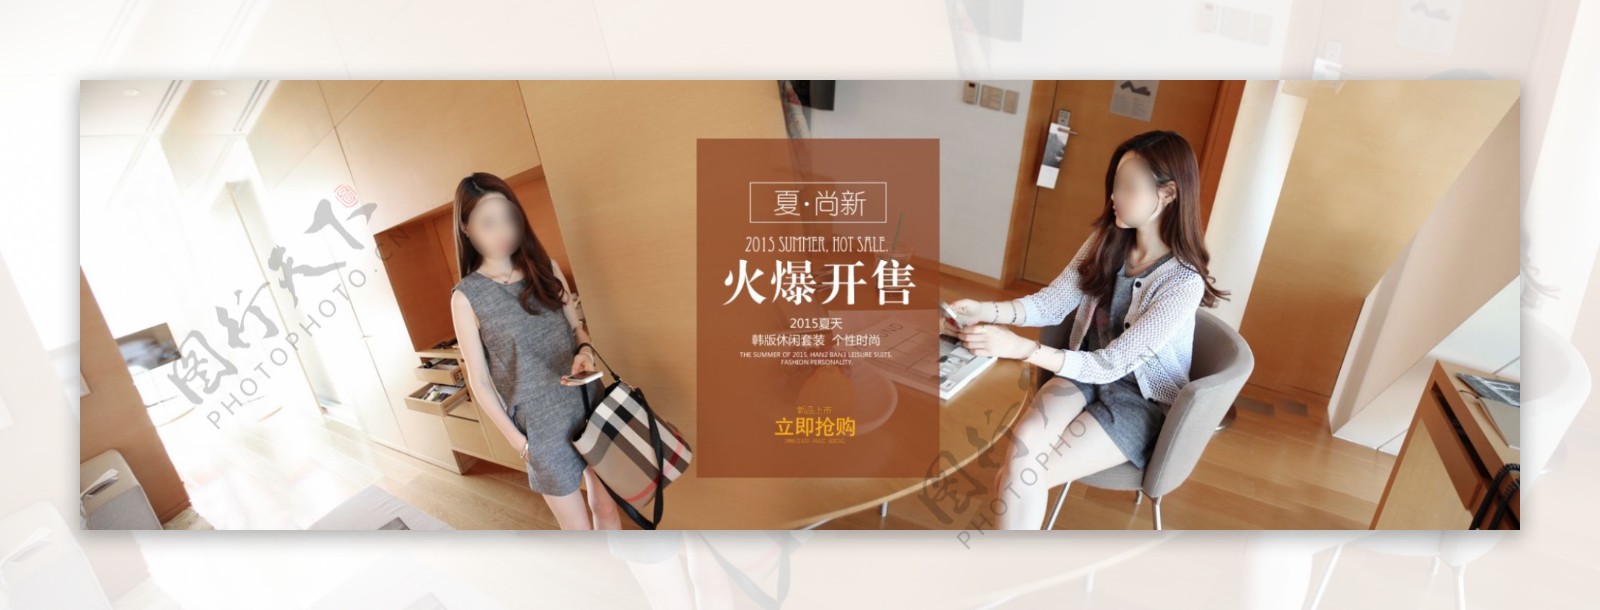 淘宝韩版女装开售促销海报设计PSD素材